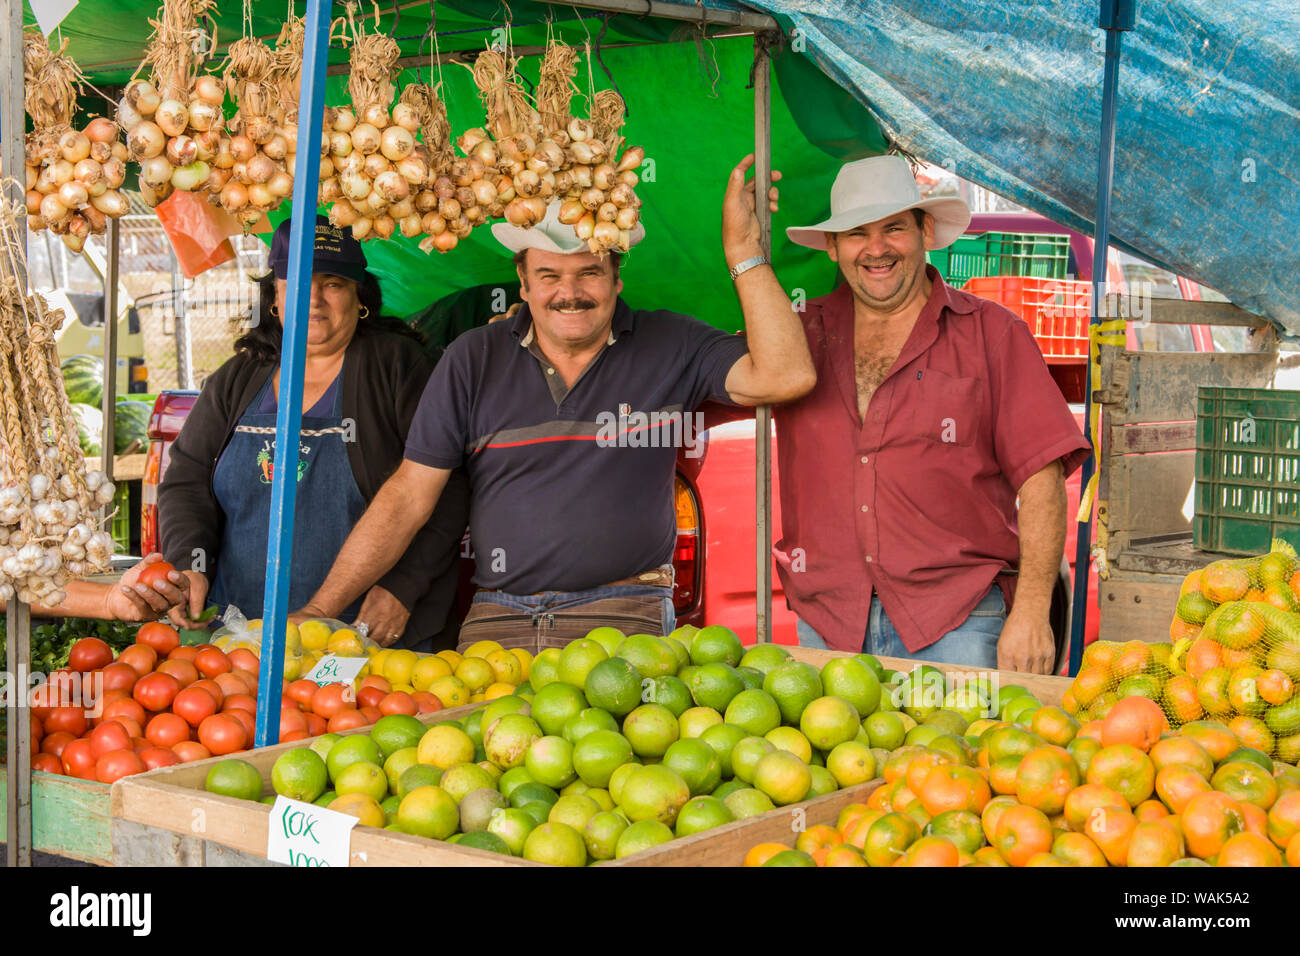 La Garita, Costa Rica. Vendors at the La Garita Farmer's Market fresh produce booth. (Editorial use only) Stock Photo